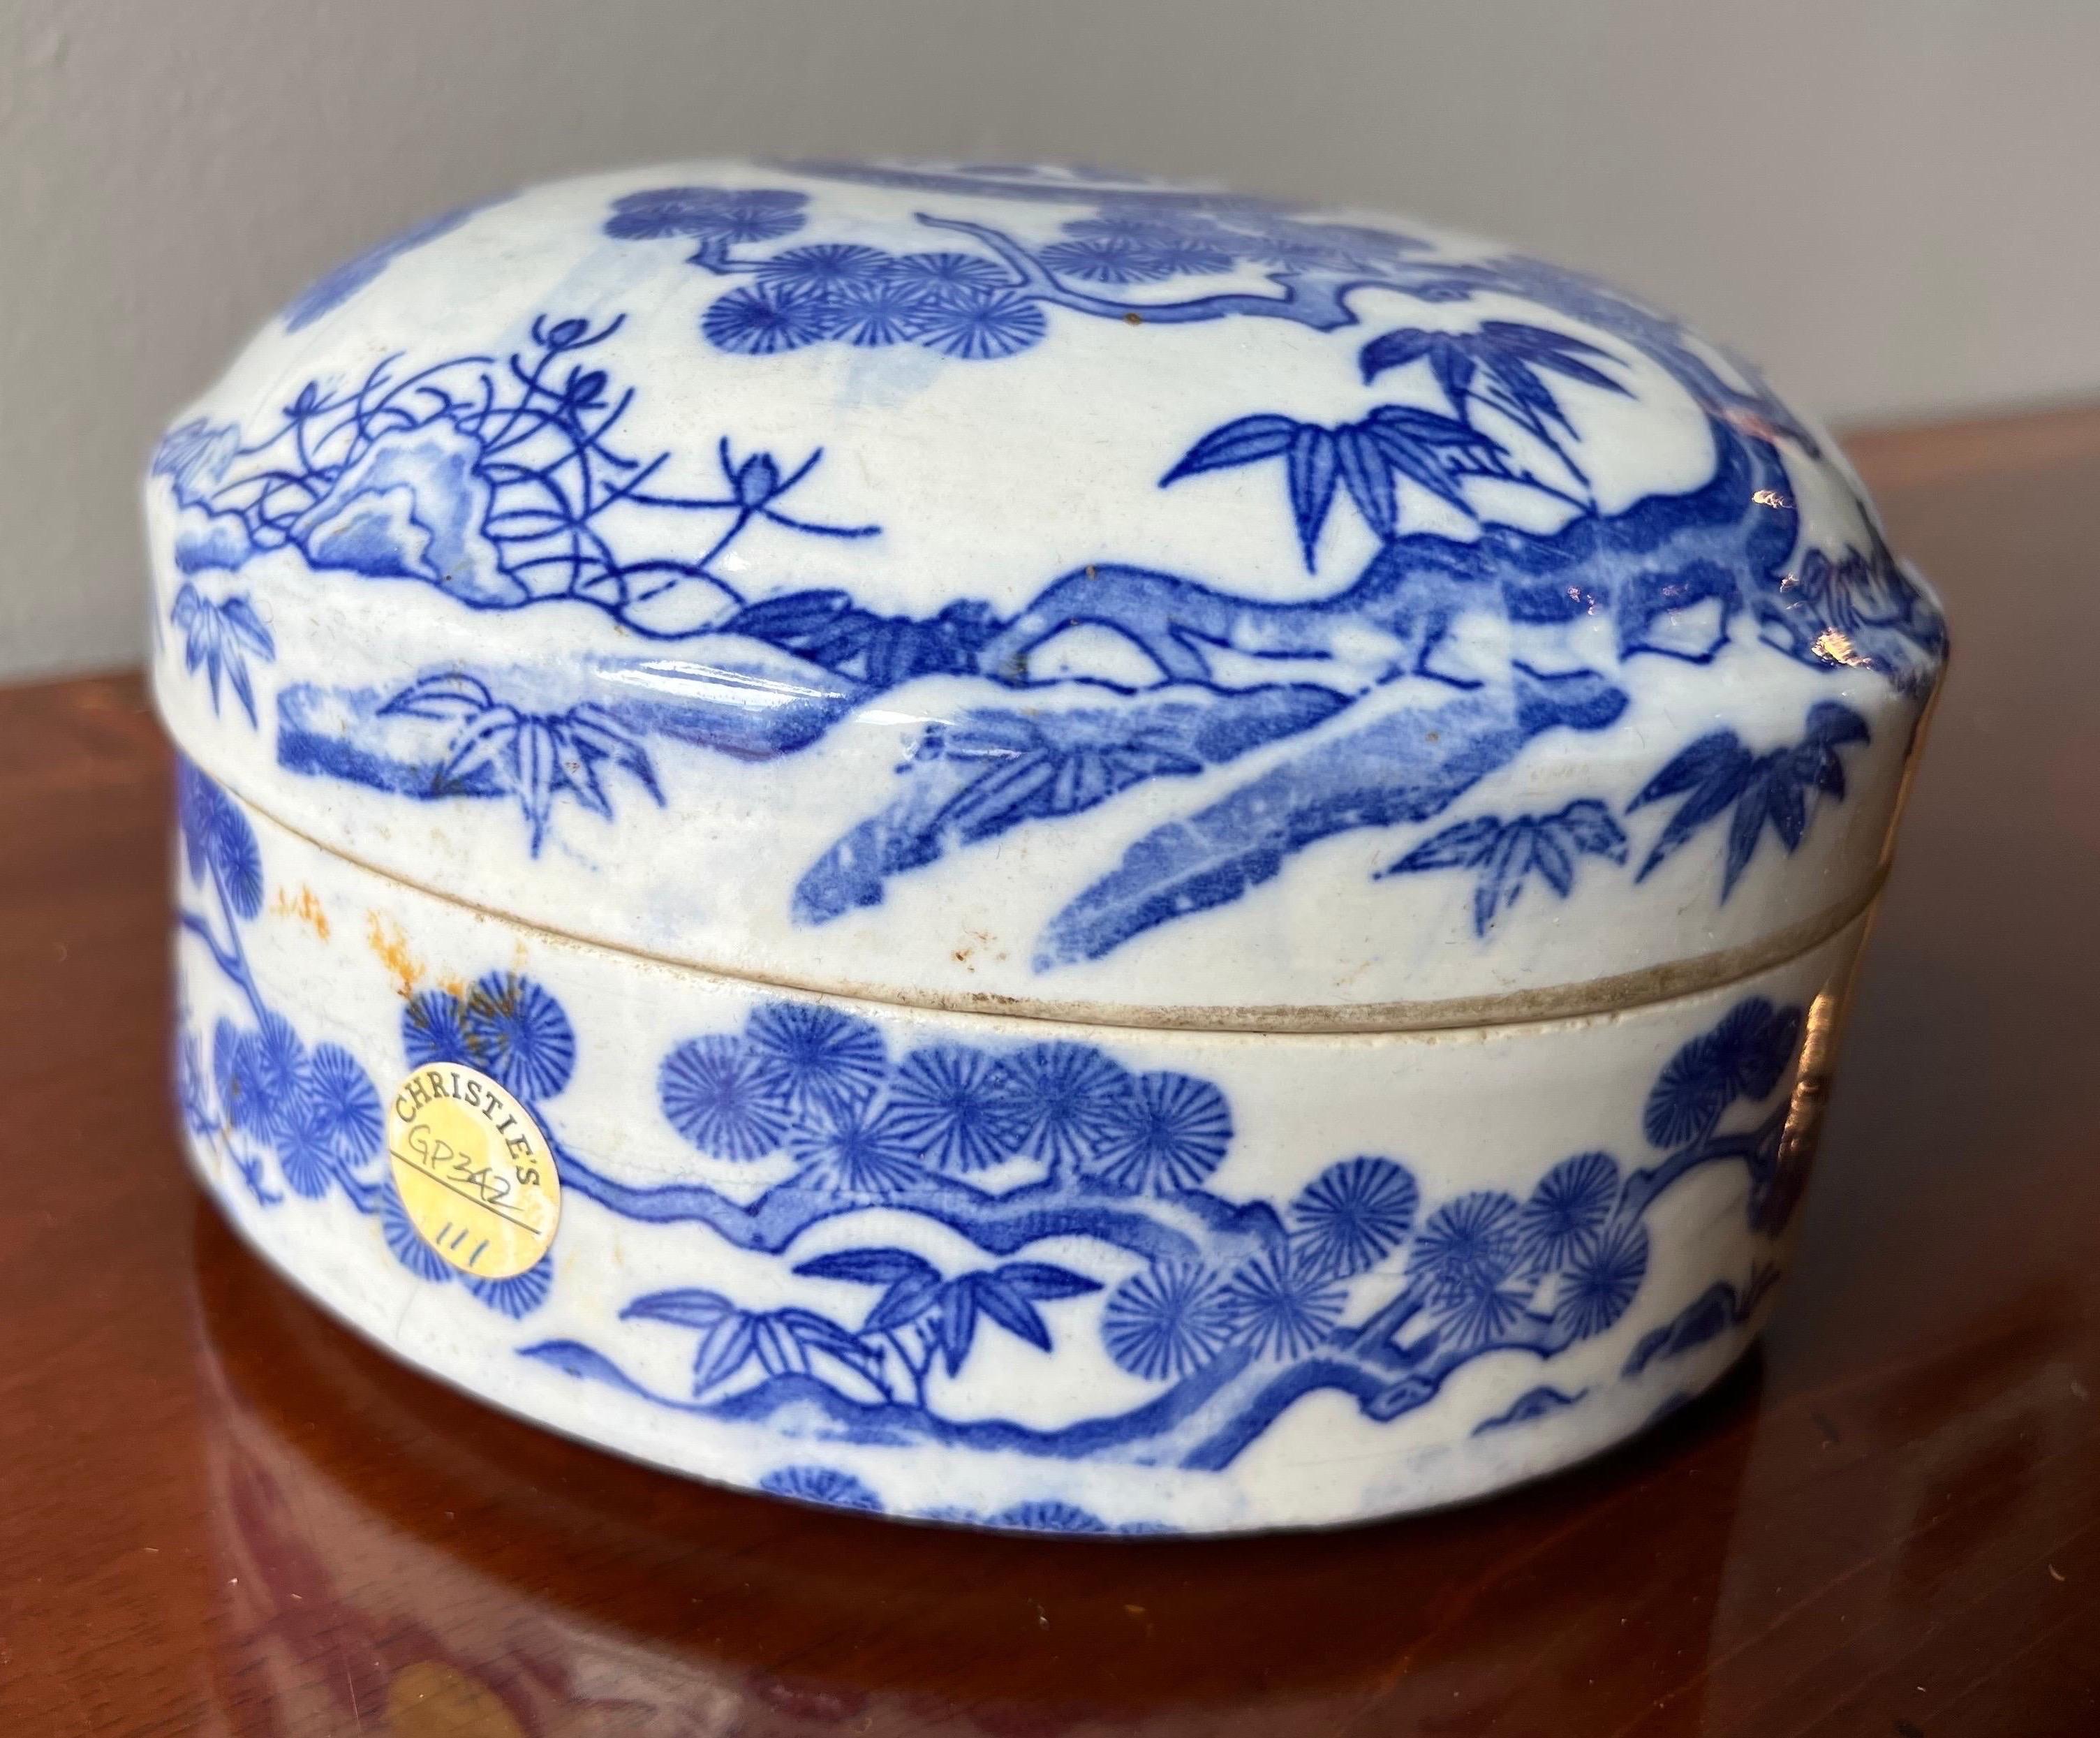 18e - début 20e siècle Bol chinois à couvercle bleu et blanc avec autocollants de Christie's. Avant 1911, aucun Label de pays d'origine n'a été apposé.